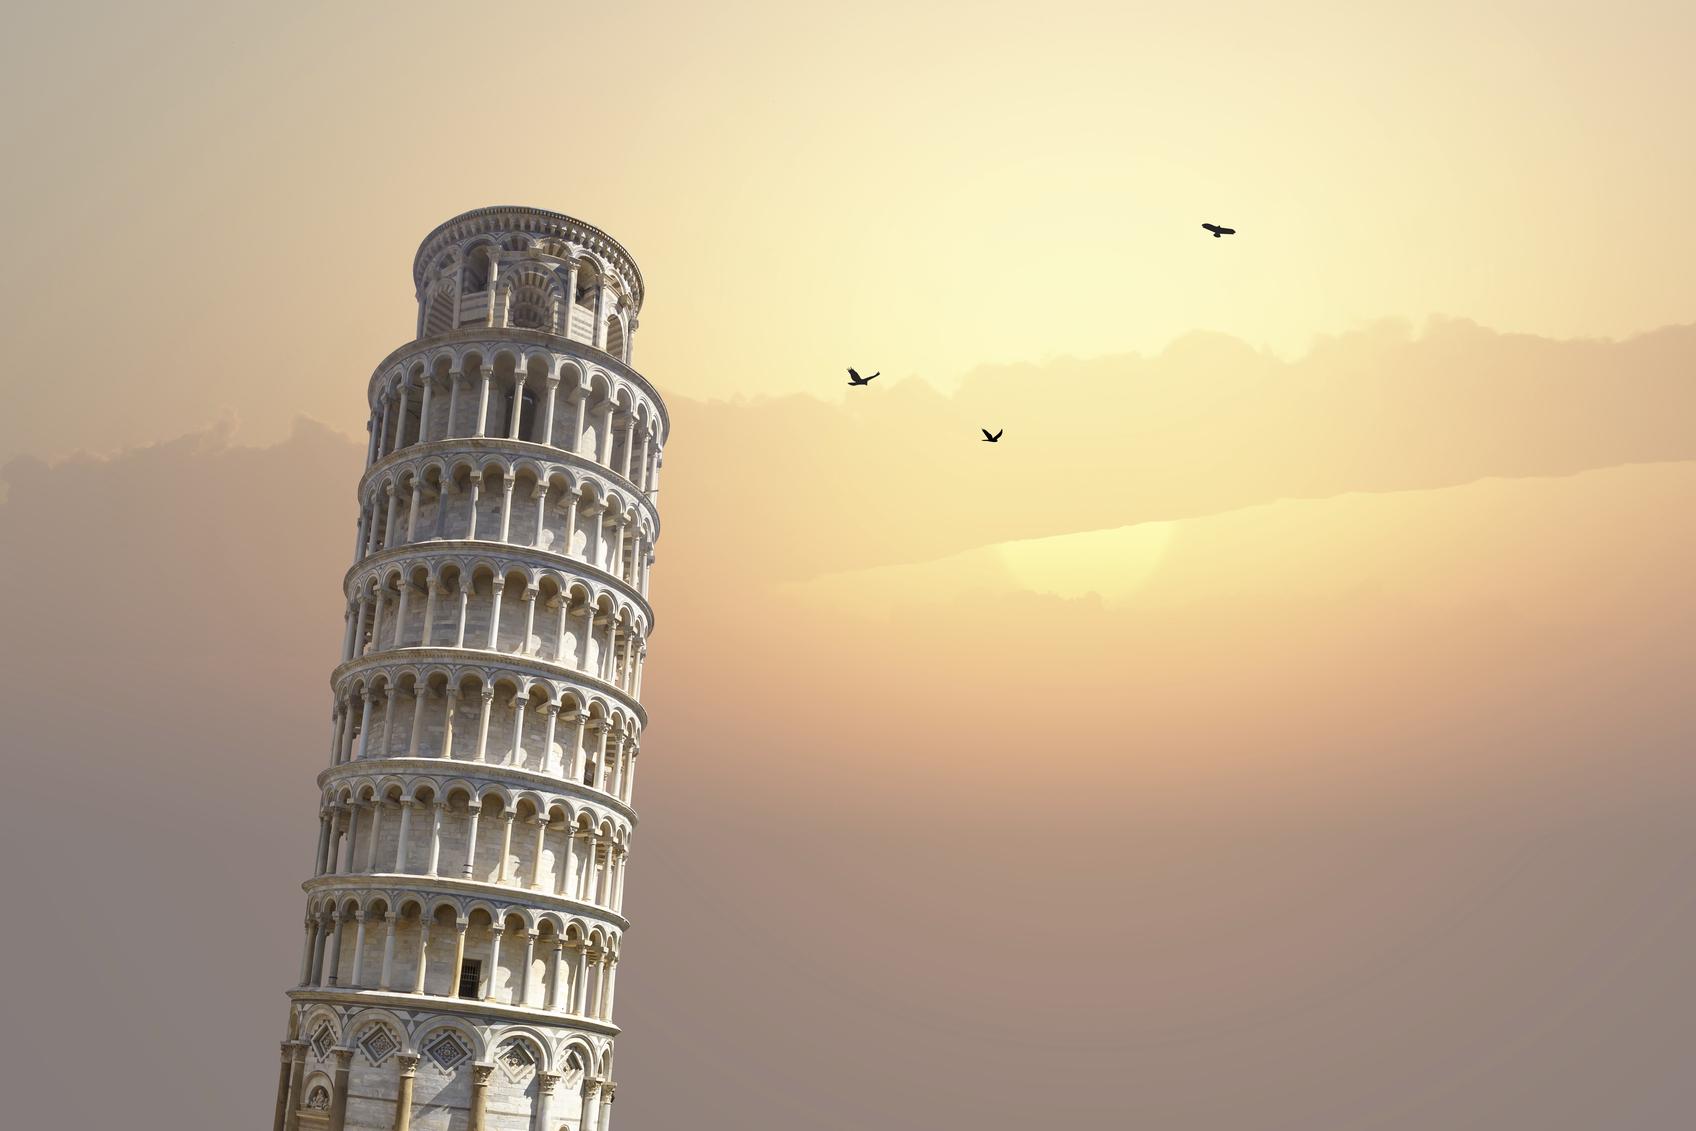 De toren van Pisa moet je toch minstens één keer in je leven gezien hebben. (foto istock)